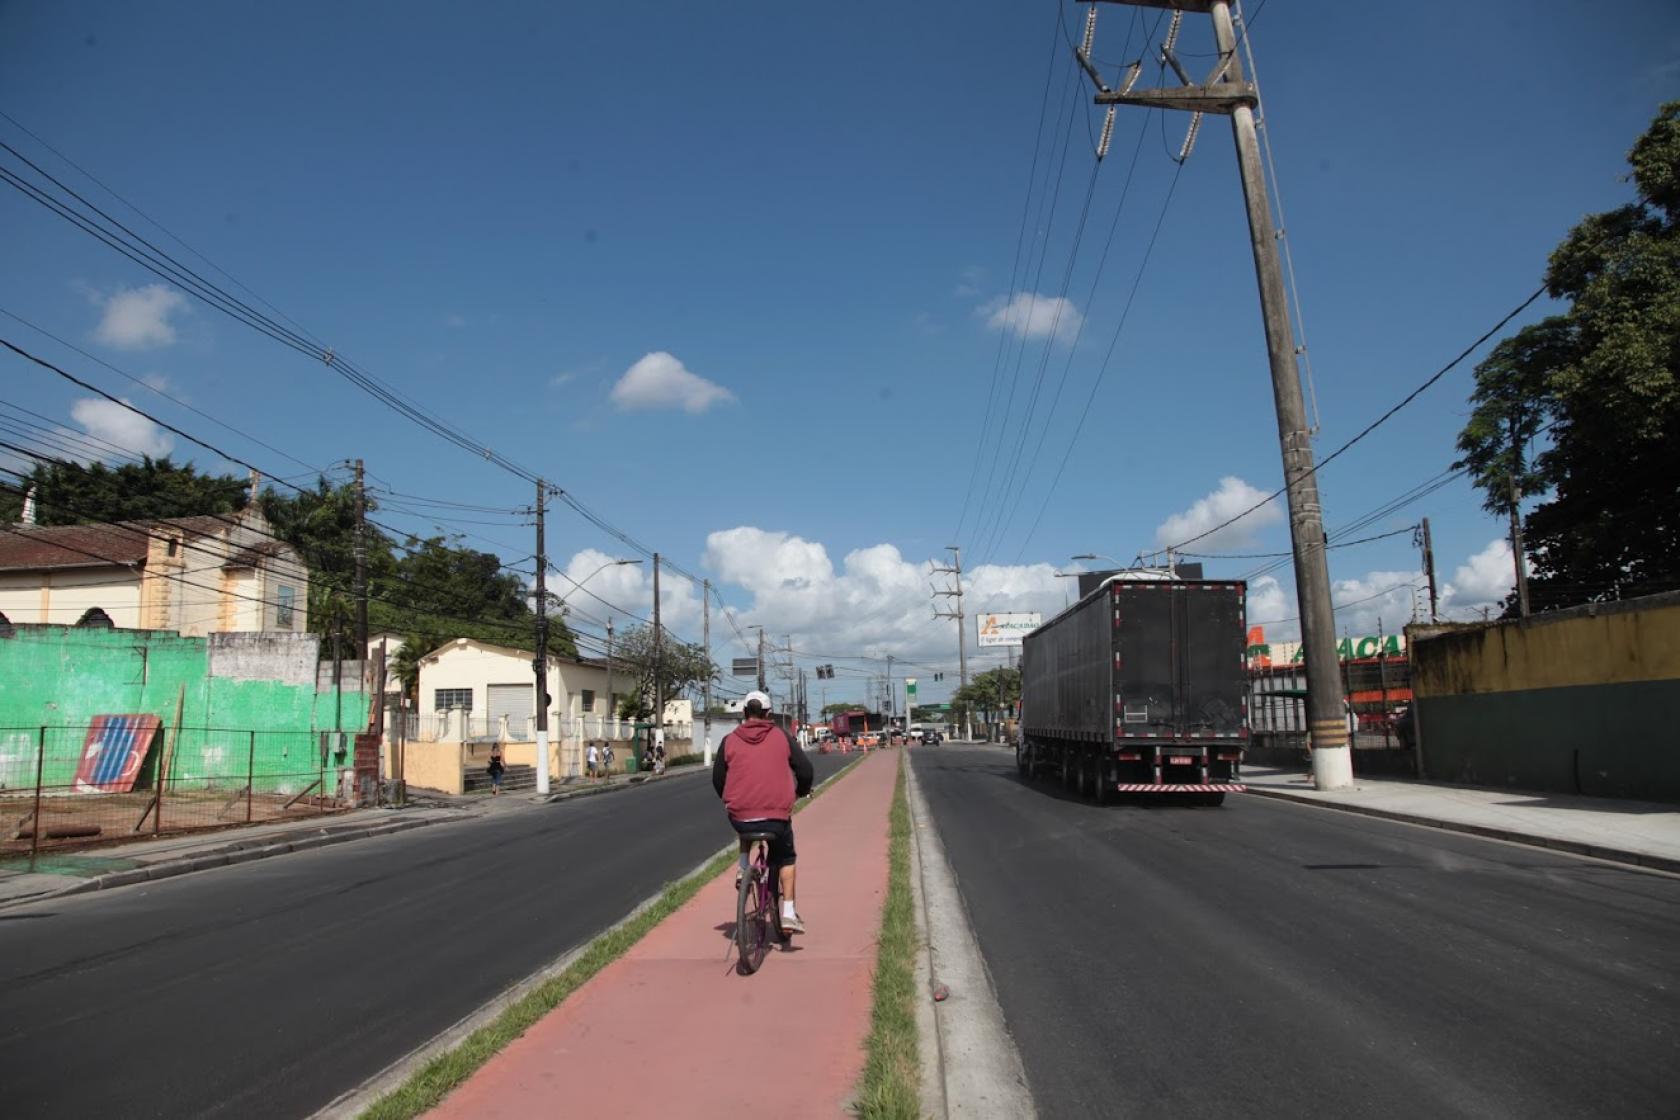 Via pavimentada com ciclovia ao centro. Ciclista pedala na ciclovia. Na pista de veículos à direita passa um caminhão. #Paratodosverem